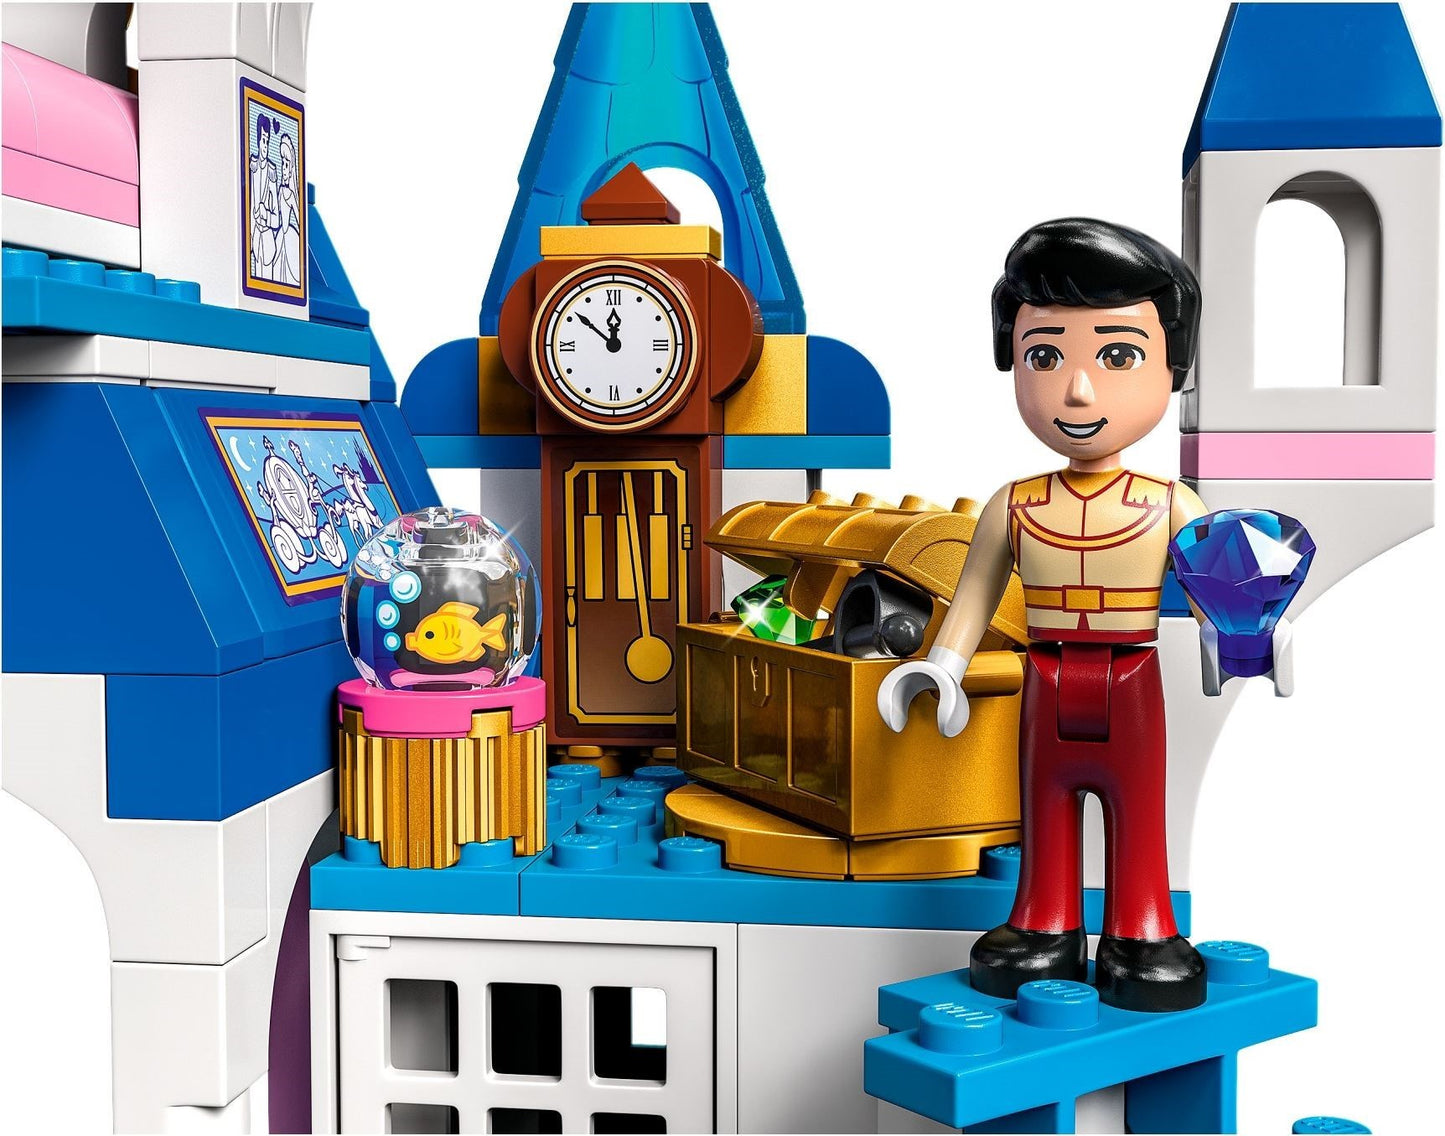 LEGO Disney - Castelul Cenusaresei si al lui Fat-Frumos 43206, 365 piese